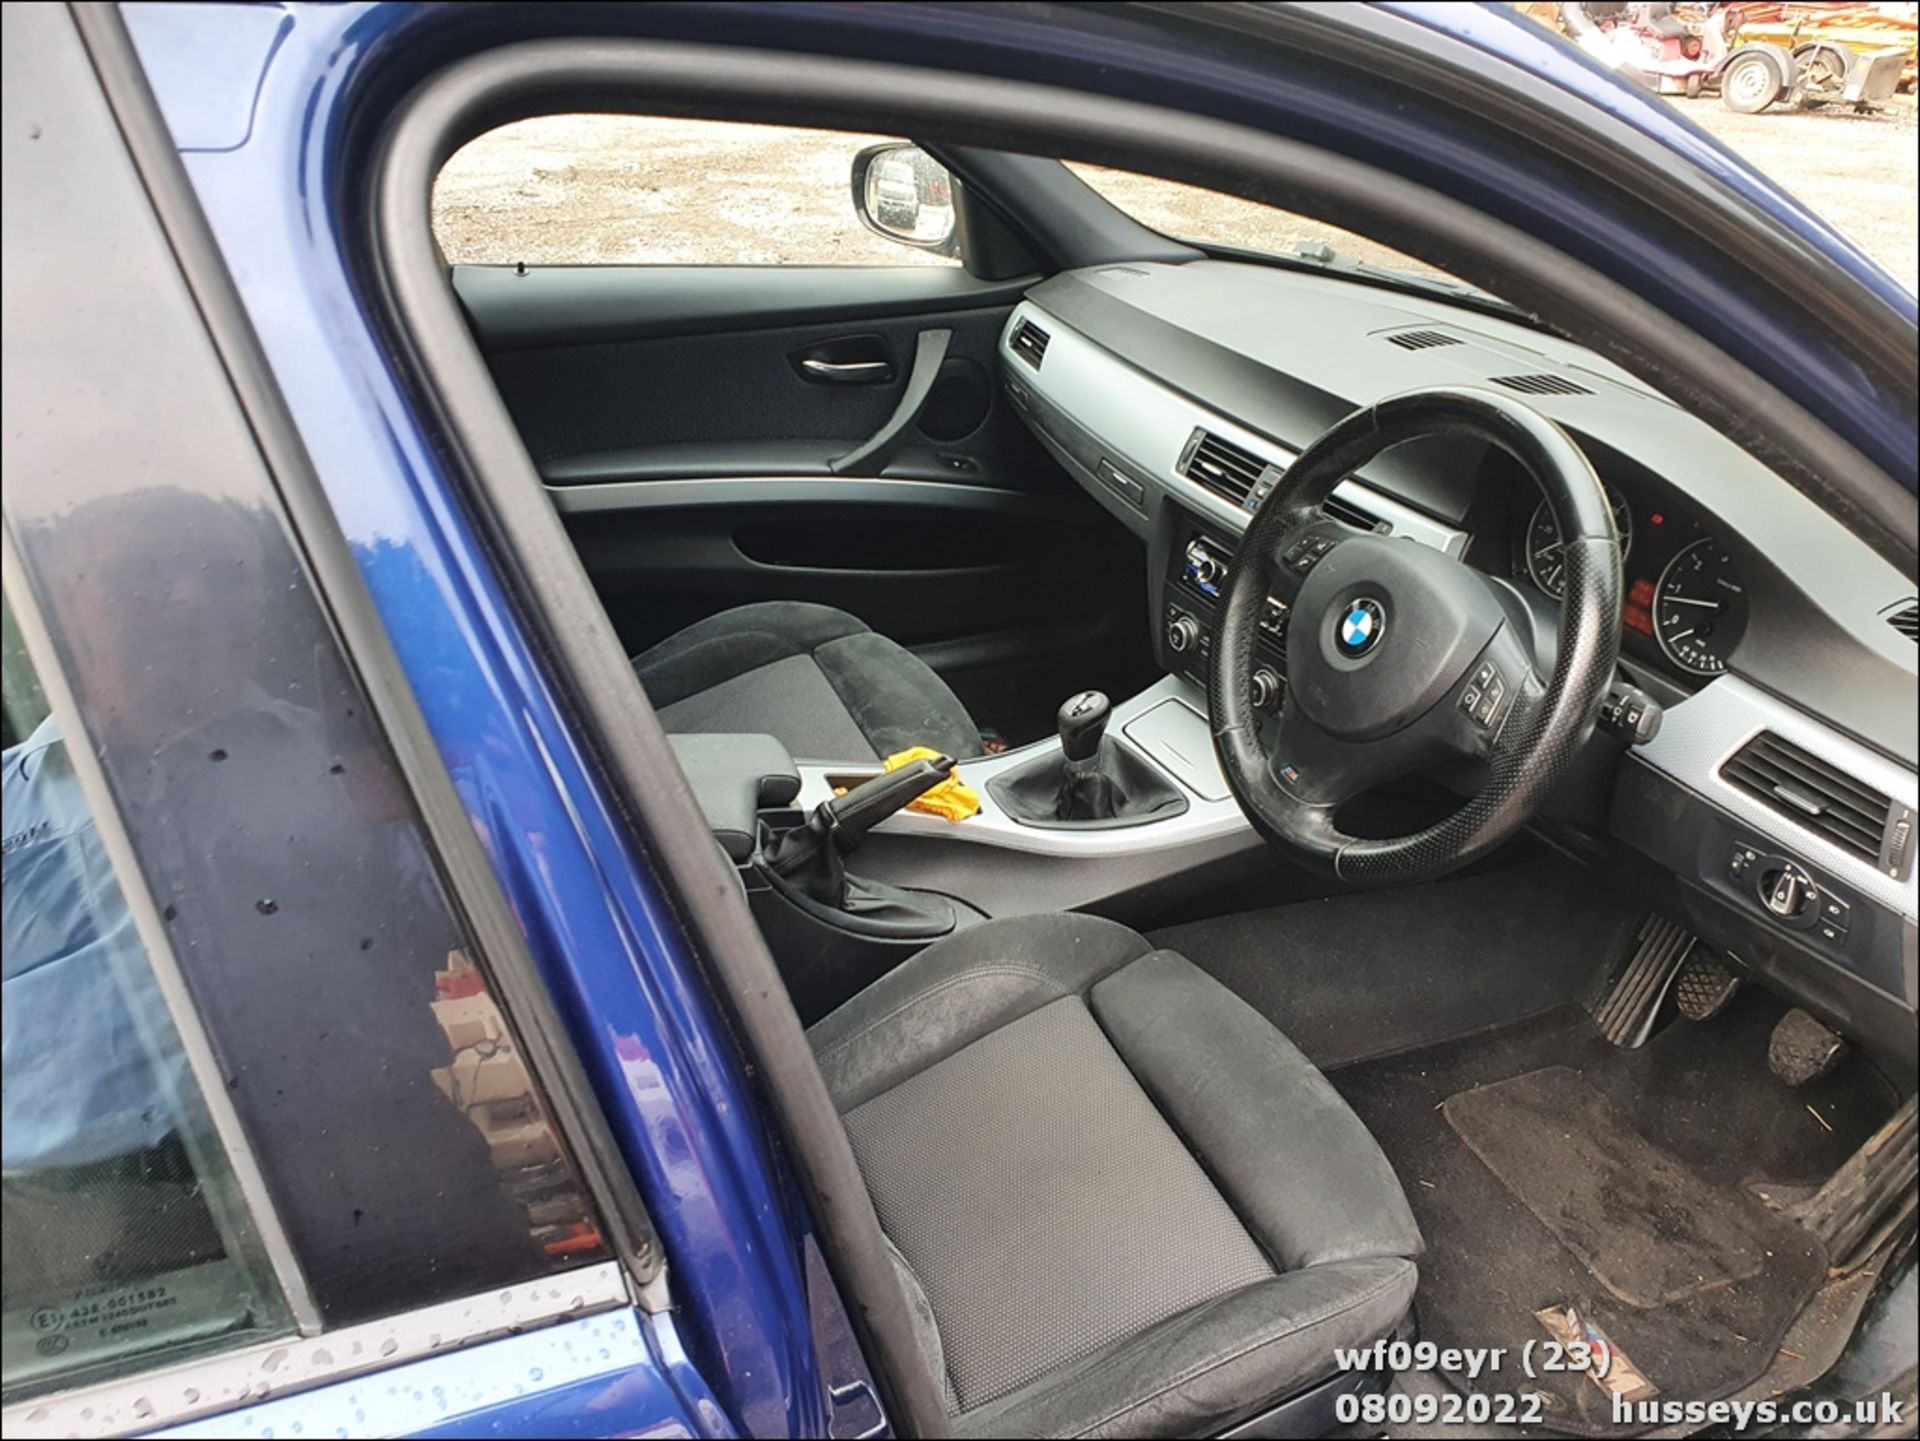 09/09 BMW 318I M SPORT TOURING - 1995cc 5dr Estate (Blue, 122k) - Image 23 of 47